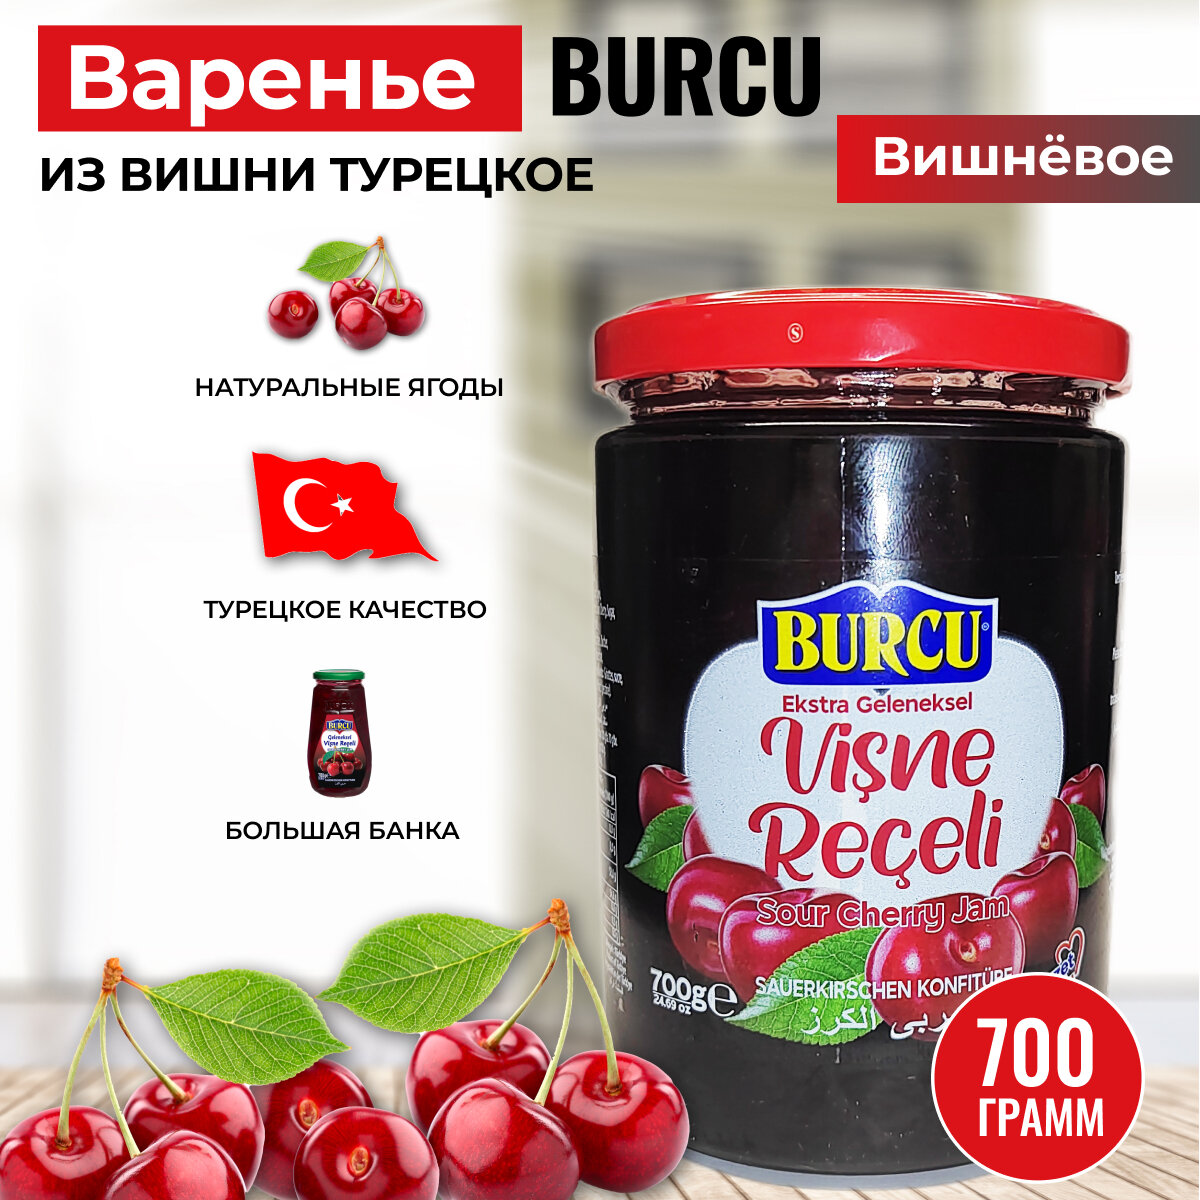 Варенье вишневое турецкое Burcu 700 гр.